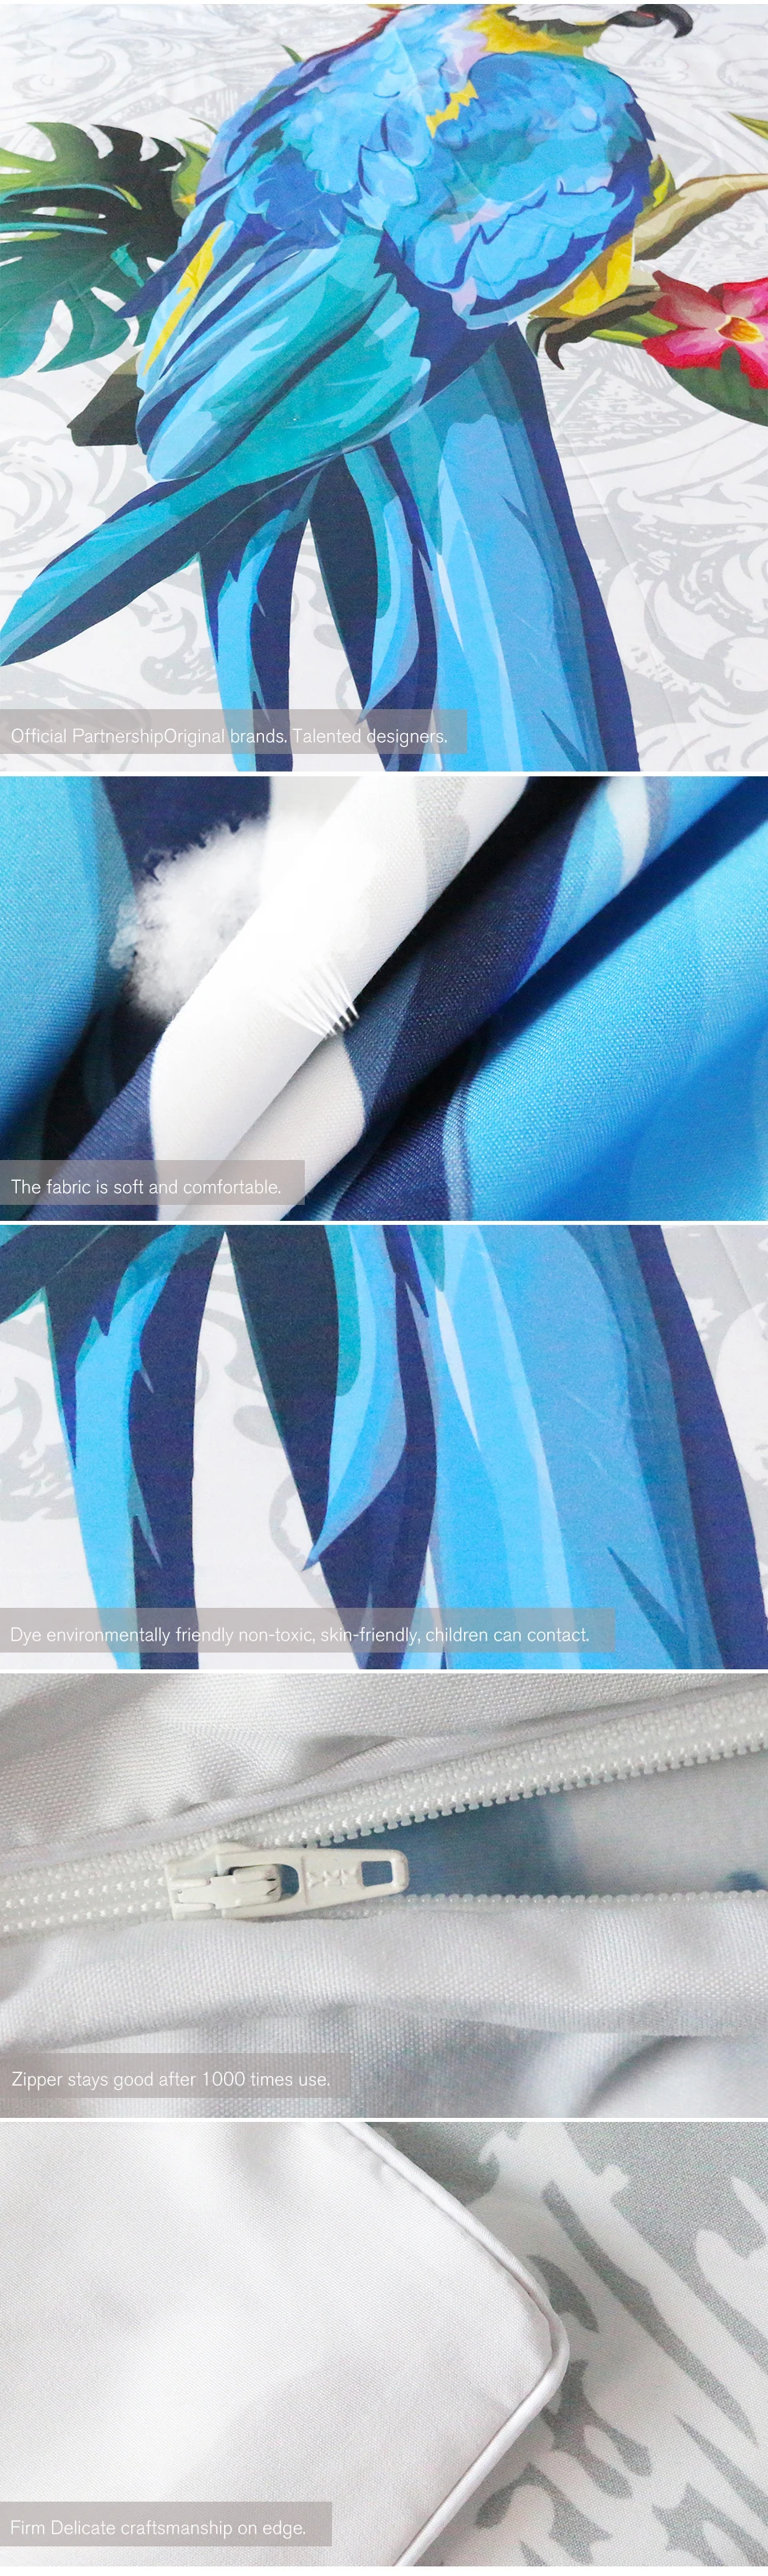 Постельные принадлежности Outlet Ара Книги по искусству Набор пододеяльников для пуховых одеял комплект из 3 предметов птица ипомеях 3D Vivid животных печати Постельное белье из микрофибры постельное белье